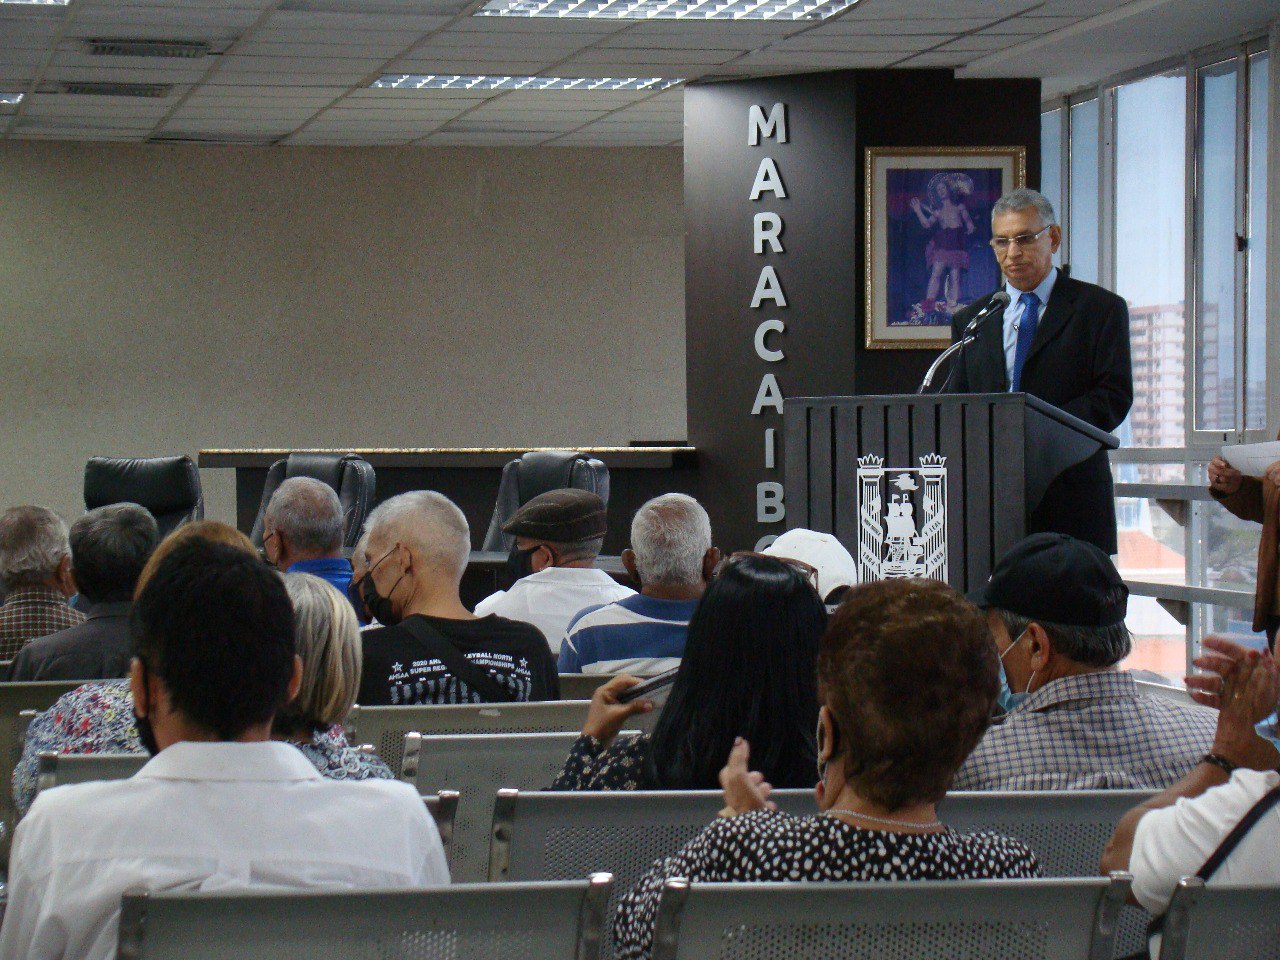 Sblano ofreció declaraciones sobre la comisión del adulto mayor y los pensionados en Maracaibo 